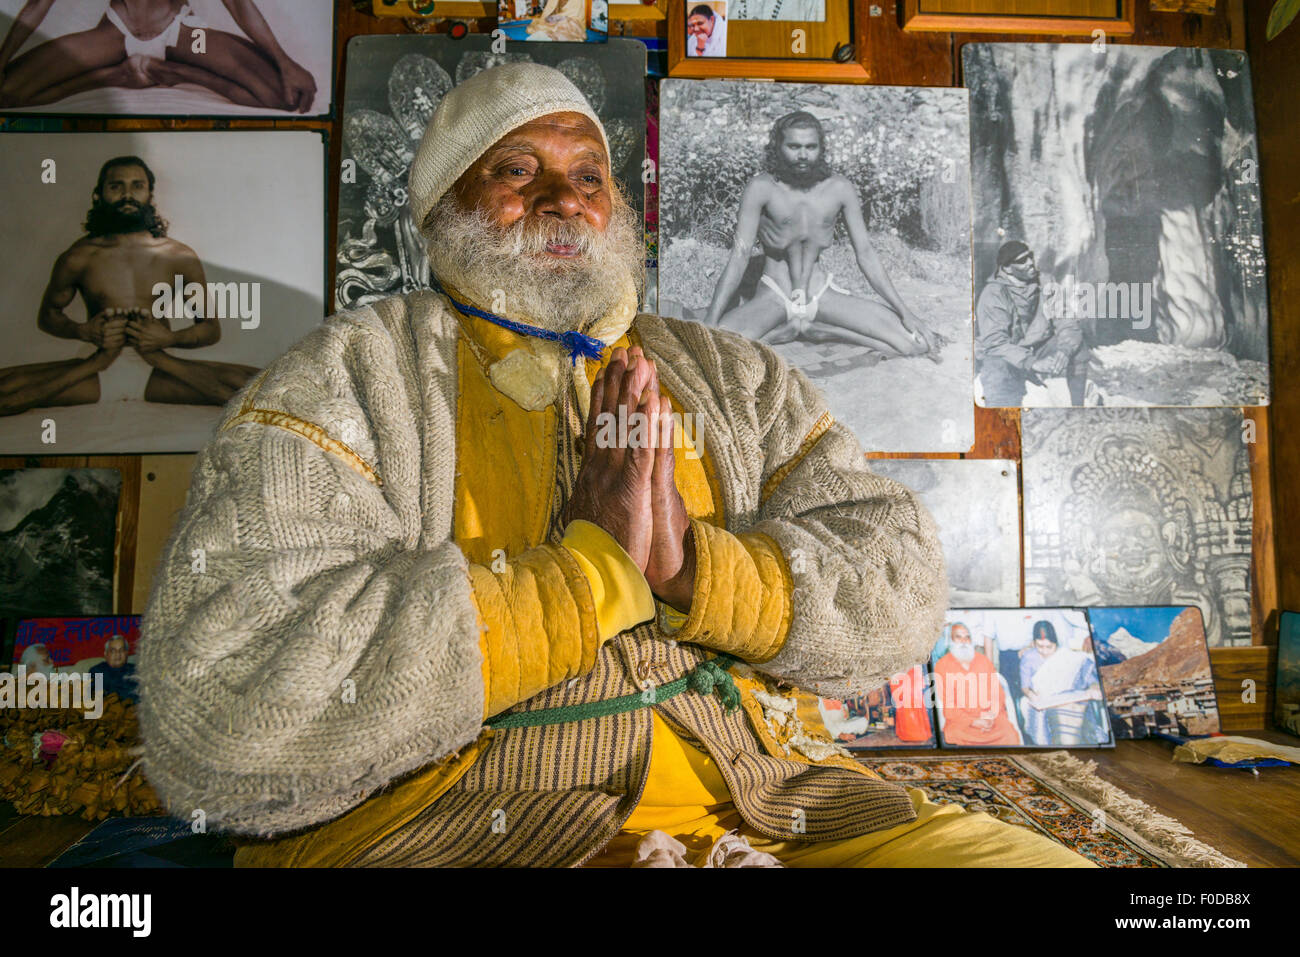 A portrait of Swami Sundaranand, a famous Sadhu, yogi and photographer, Gangotri, Uttarakhand, India Stock Photo